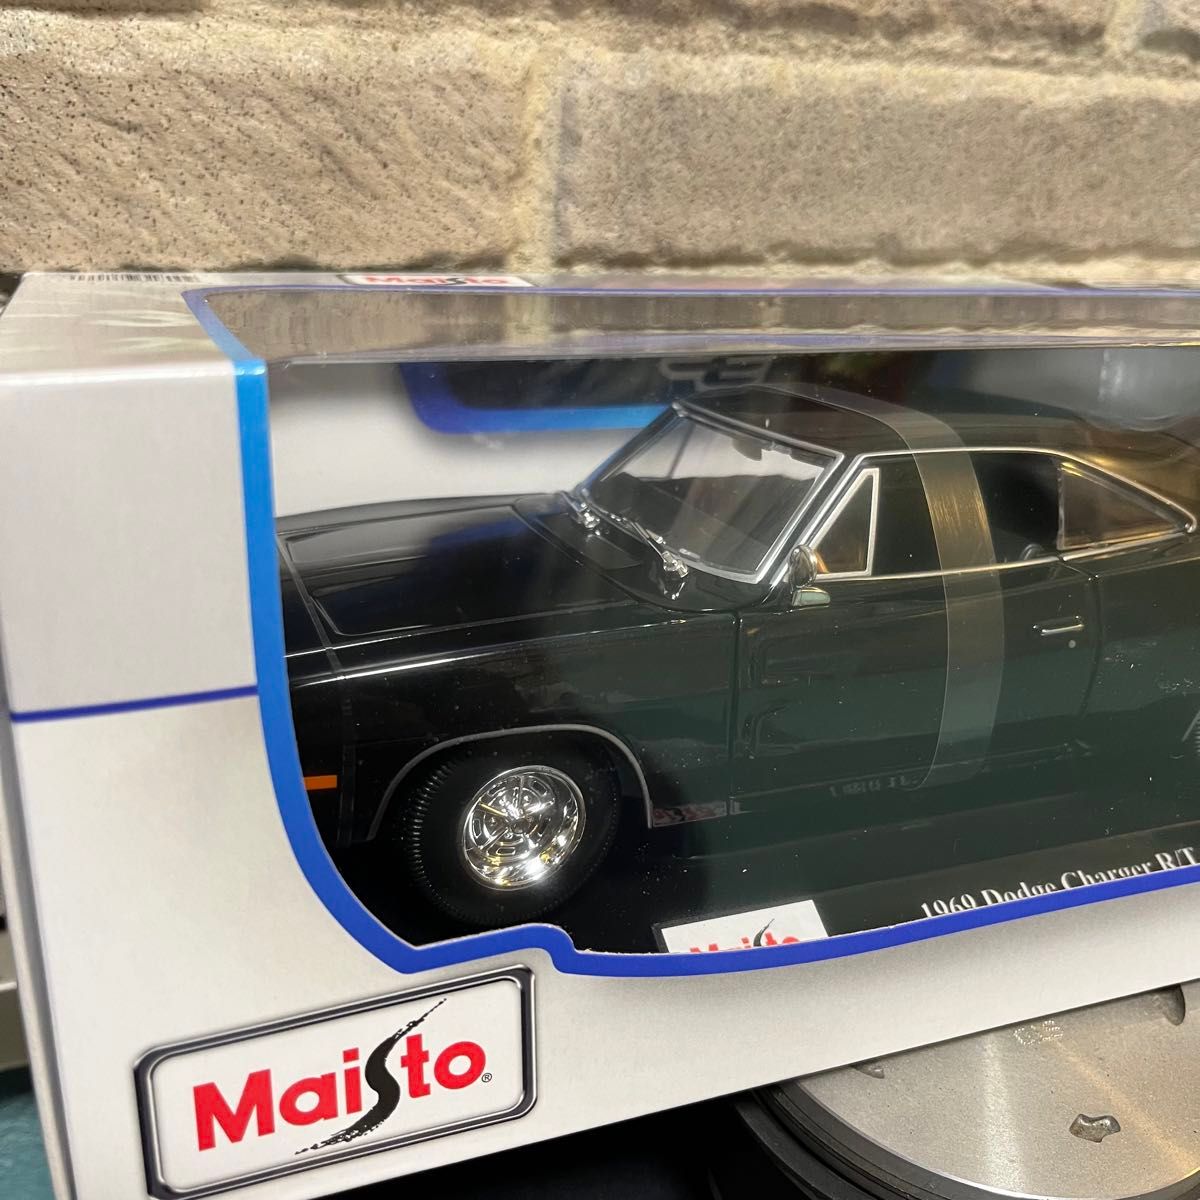  Maisto マイスト 1/18 1969 ダッジ チャージャーR/T ◆ 1969 Dodge Charger R/T